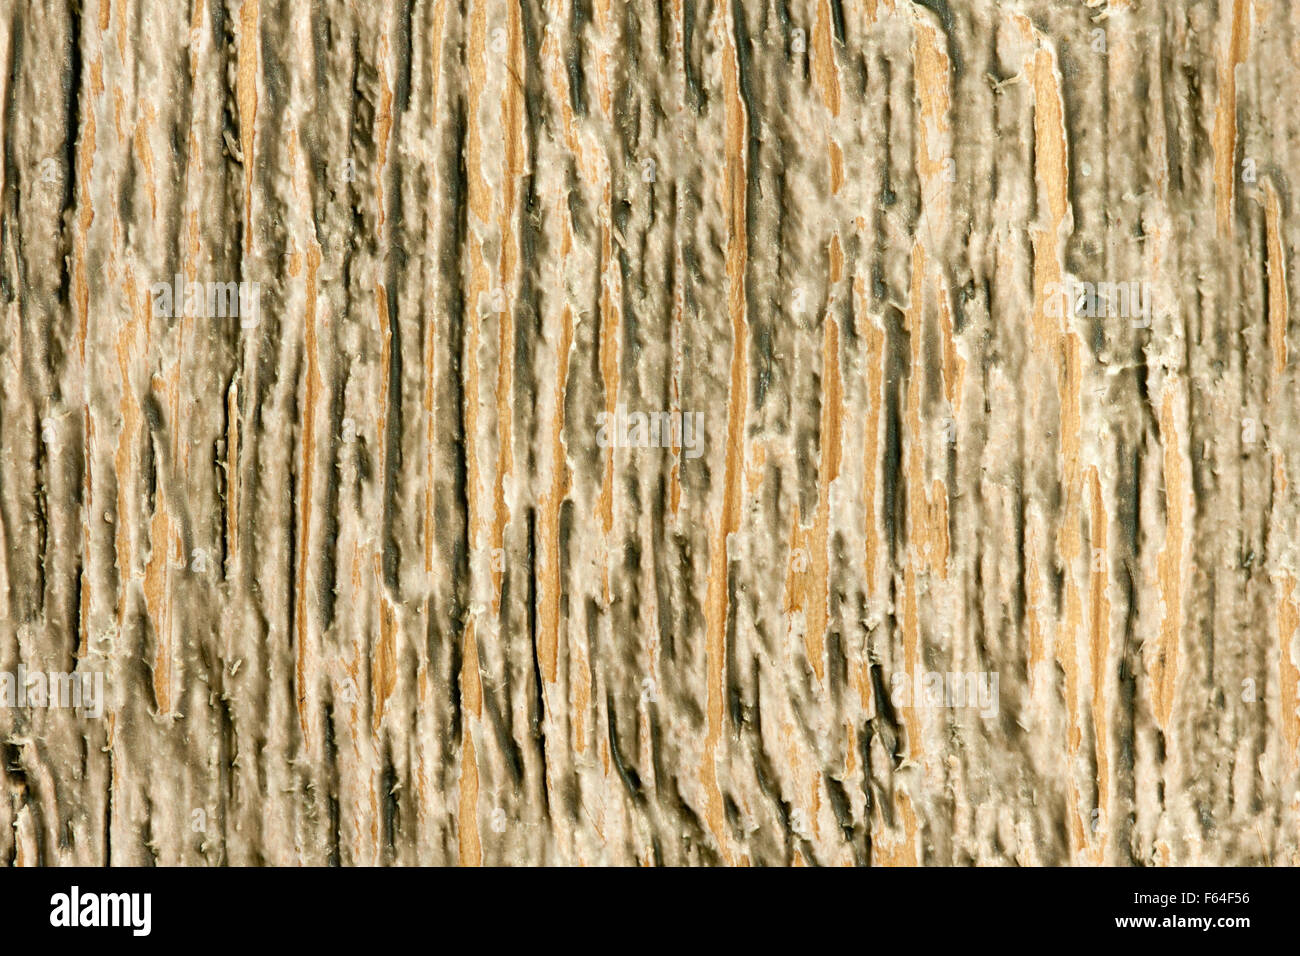 Close-up of obsolete surface en bois. La texture de fond ou Banque D'Images